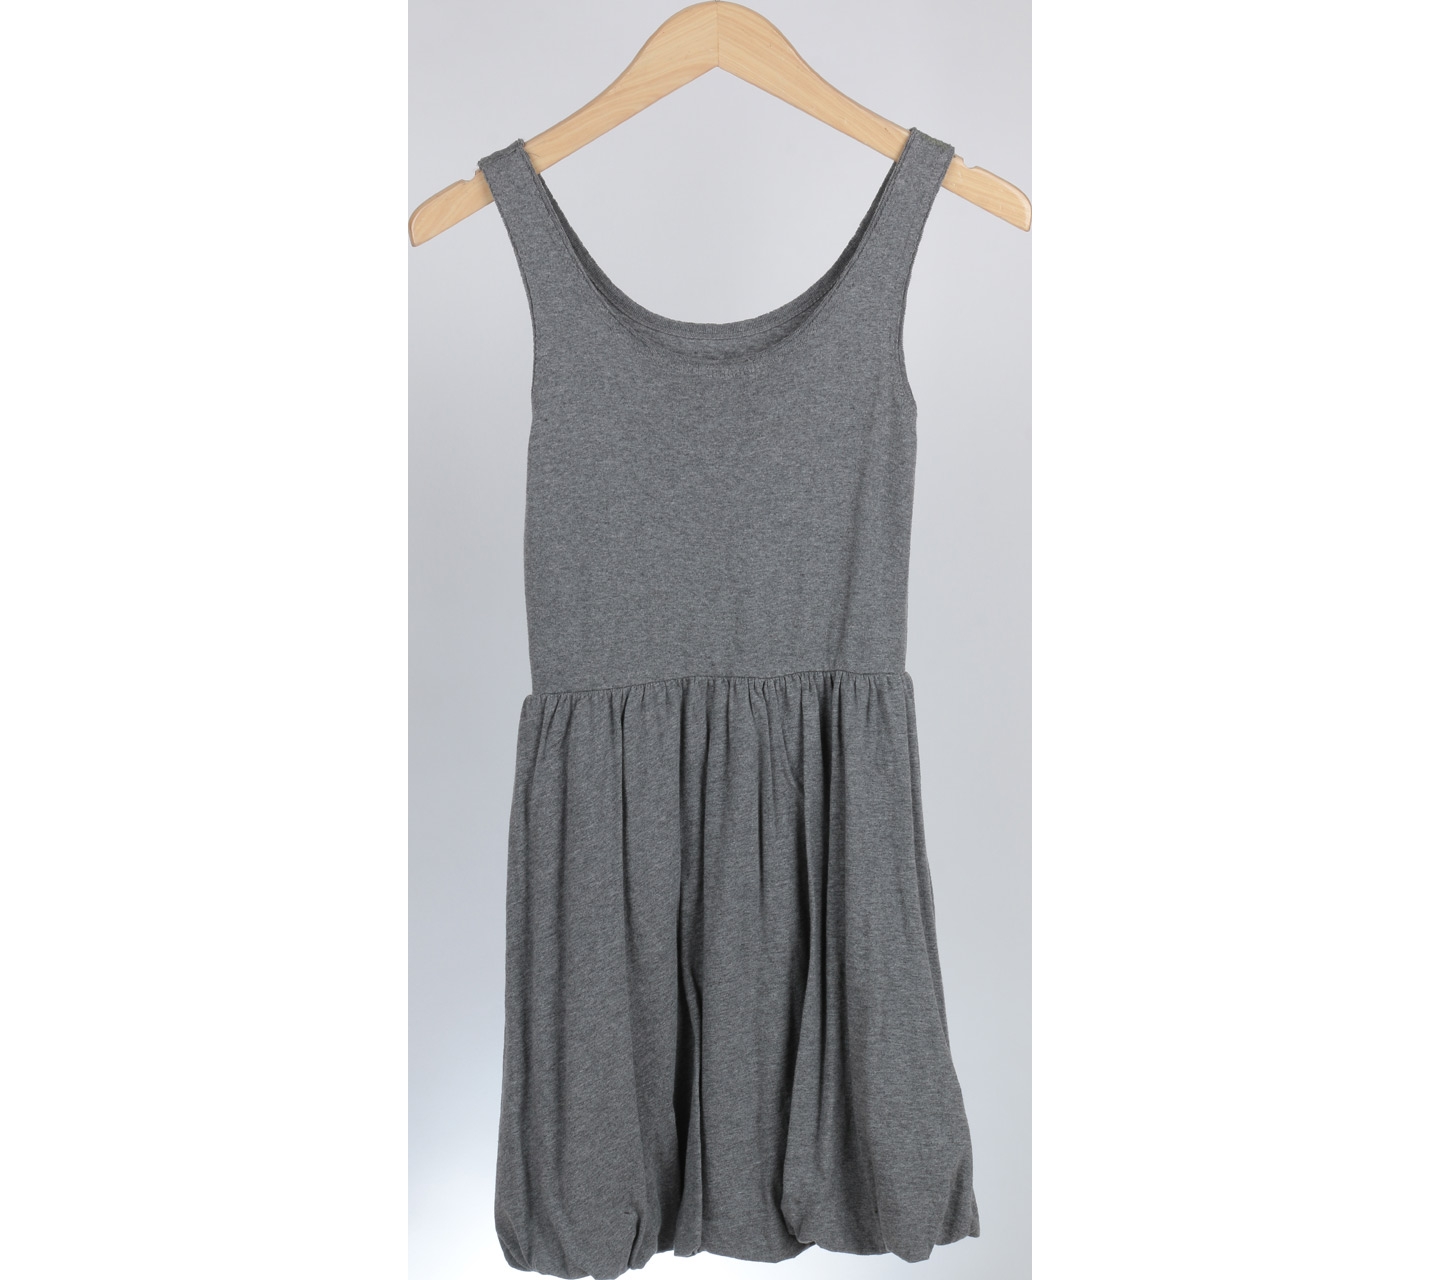 I Love H81 Grey Mini Dress